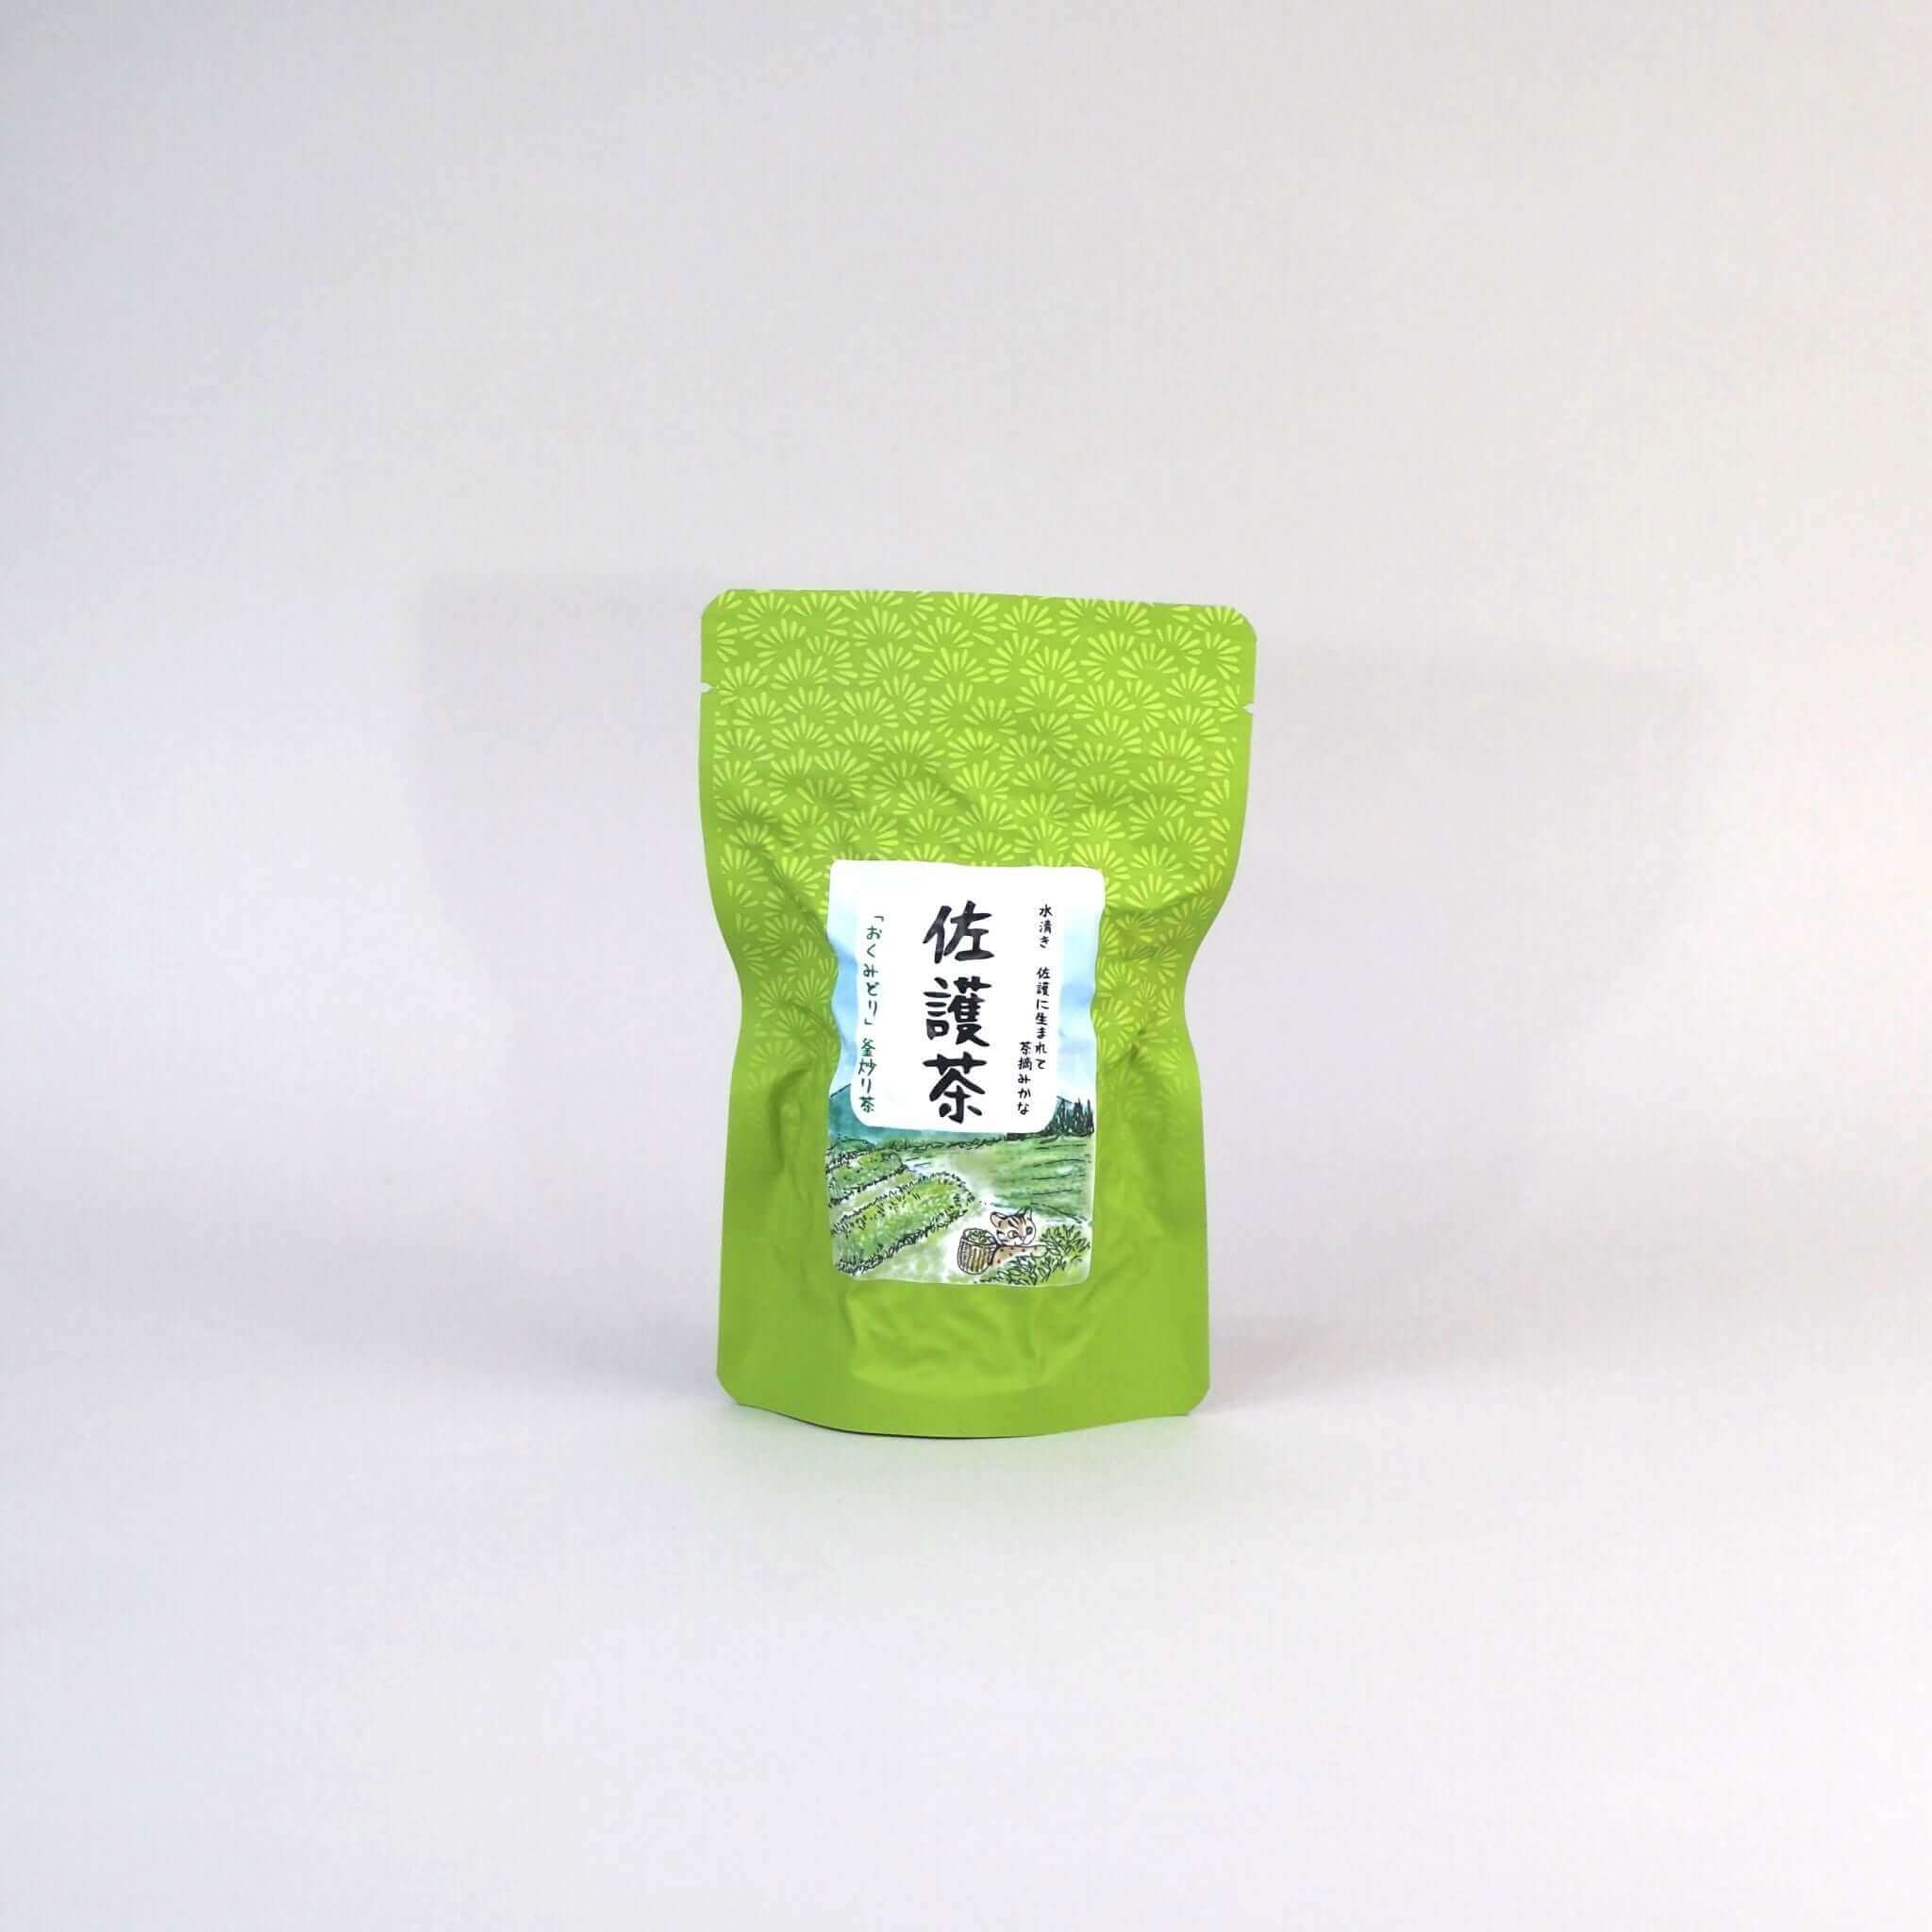 茶葉のパッケージ画像です。緑色の外装です。外装の中央に、縦書きで「佐護茶」と記載されています。